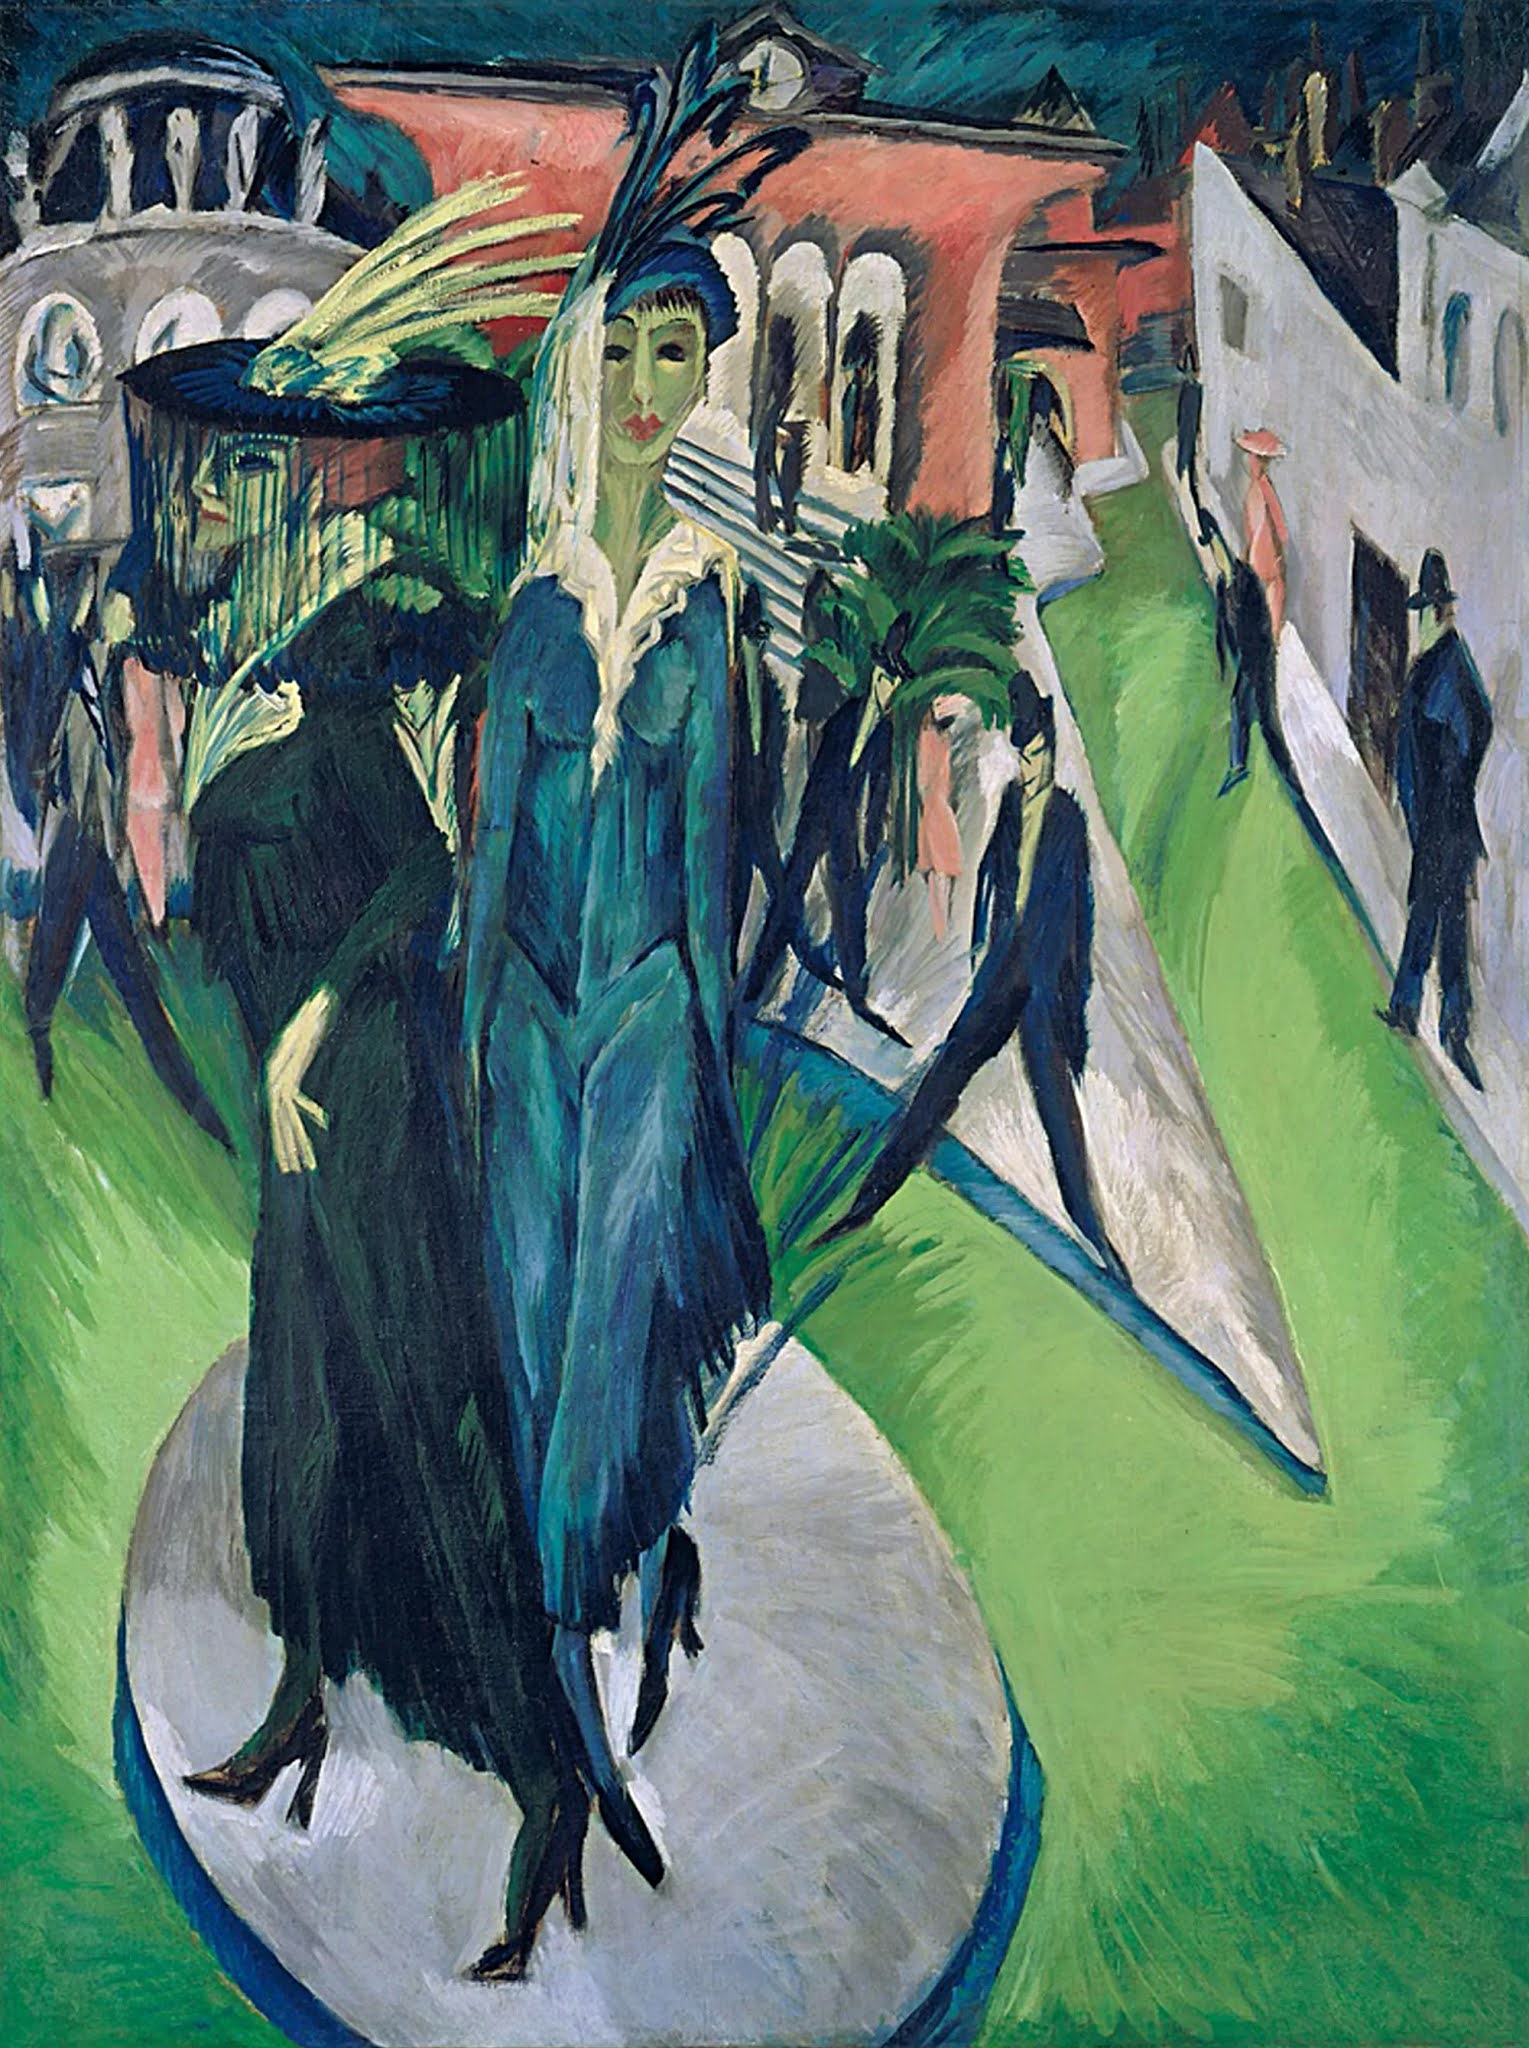 Enjoy some Damn Fine Art Ernst Ludwig Kirchner